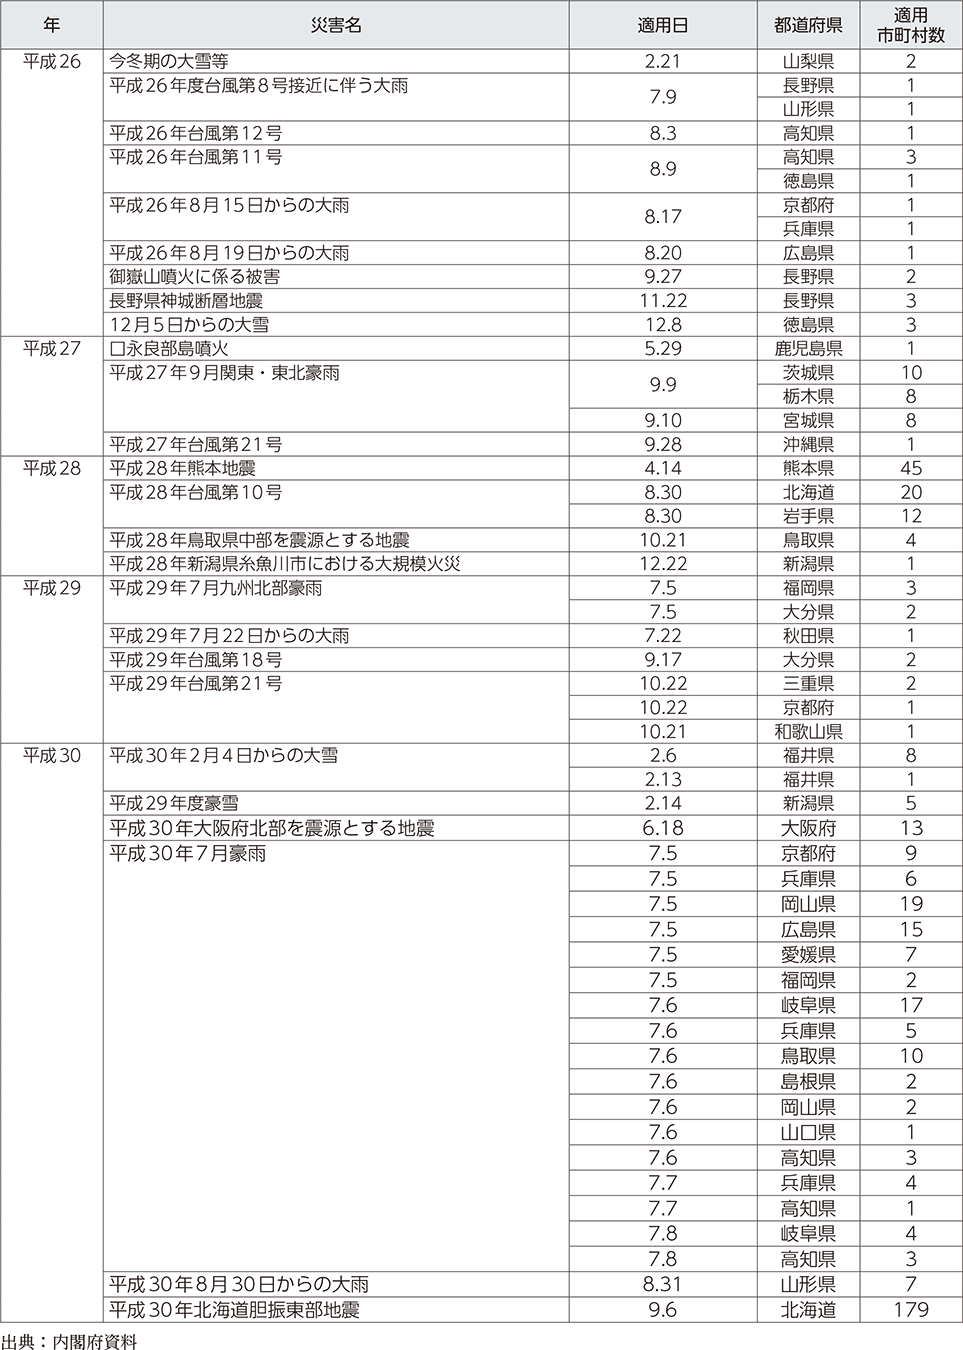 附属資料12　災害救助法の適用実績（阪神・淡路大震災以降）（4）